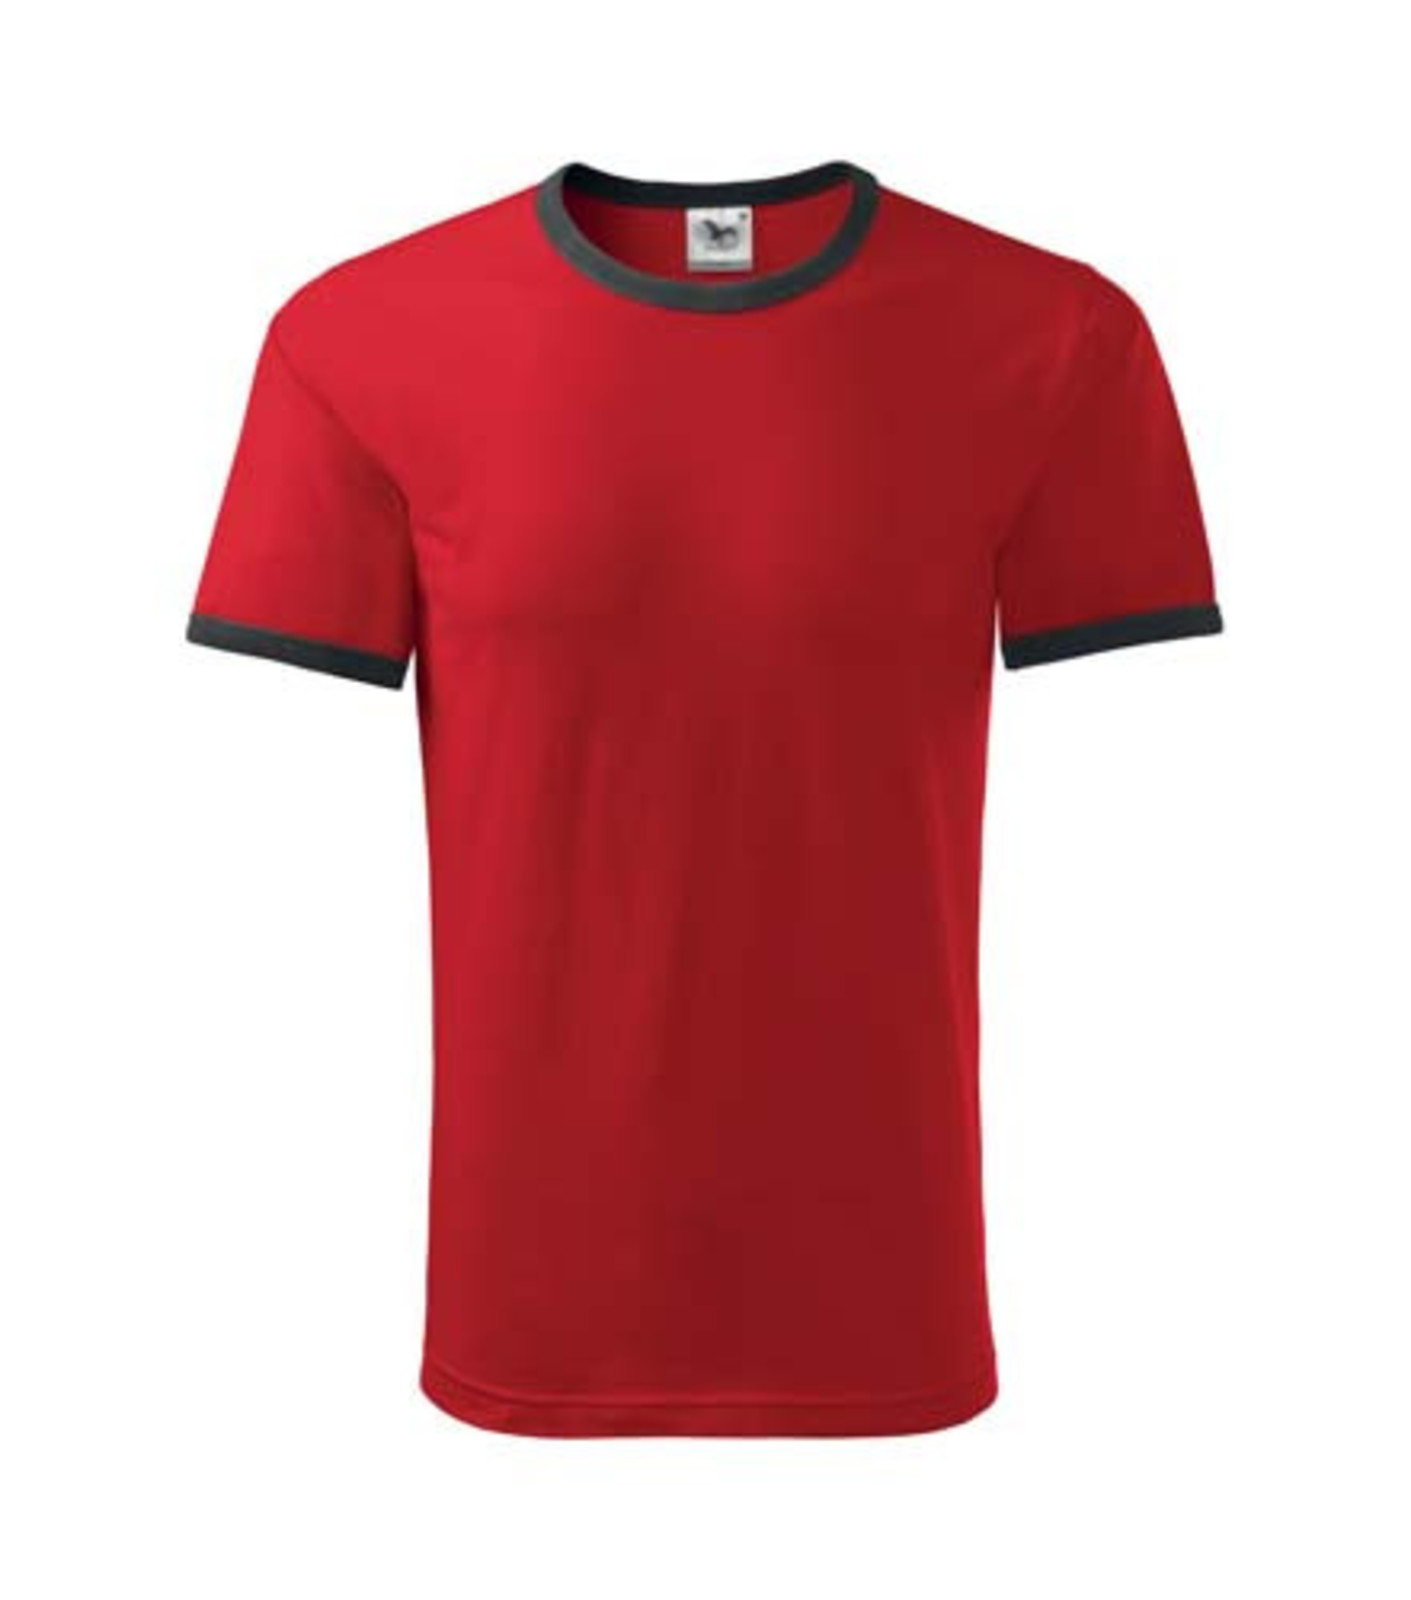 Unisex tričko Adler Infinity 131 - veľkosť: S, farba: čierna/červená